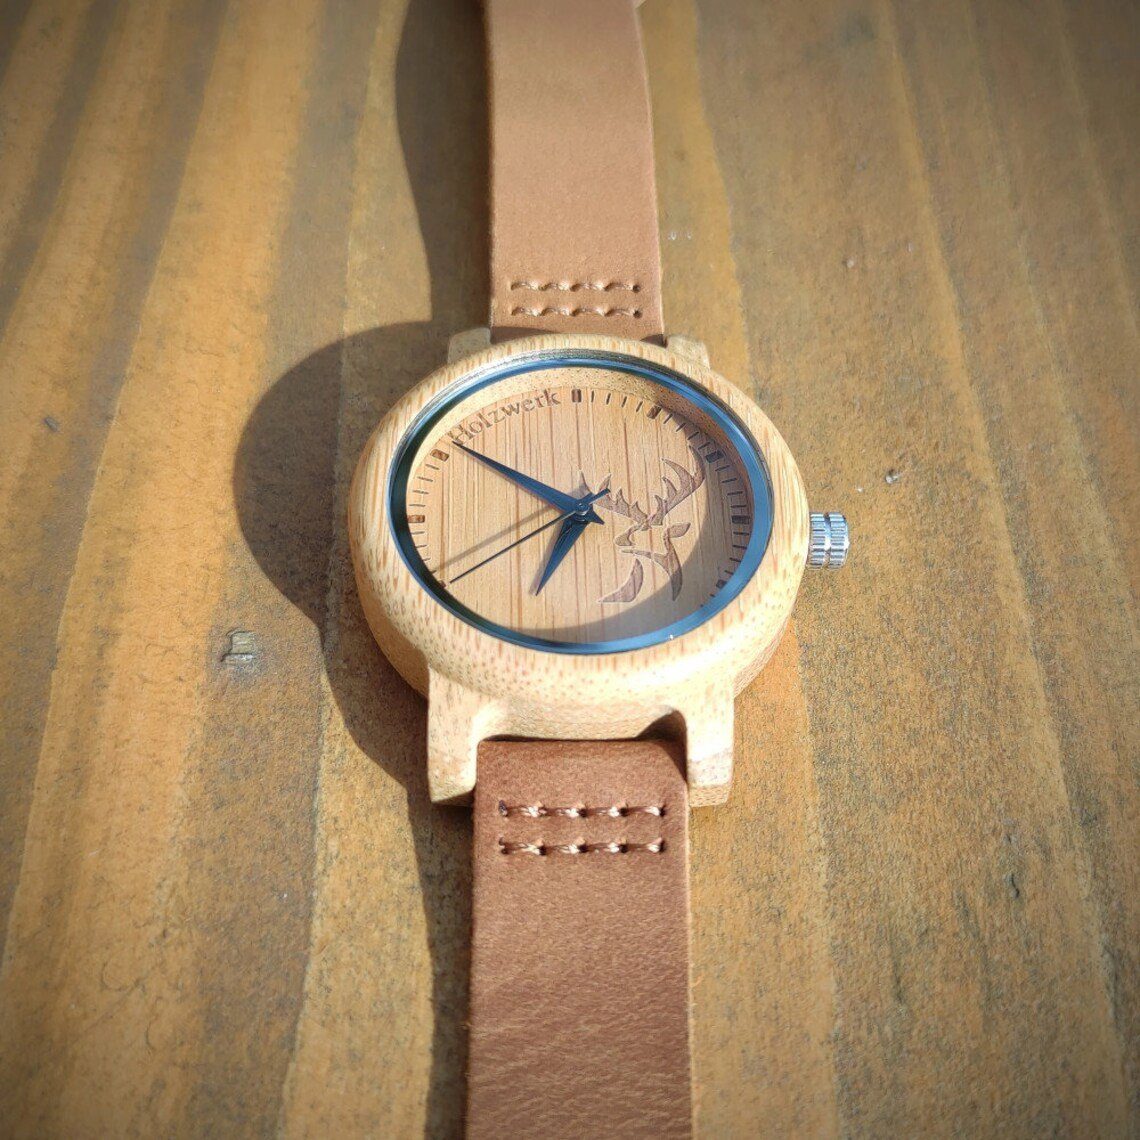 Hirsch Holz kleine Damen Uhr, GERA Armband beige braun, Quarzuhr & Leder Logo, Holzwerk